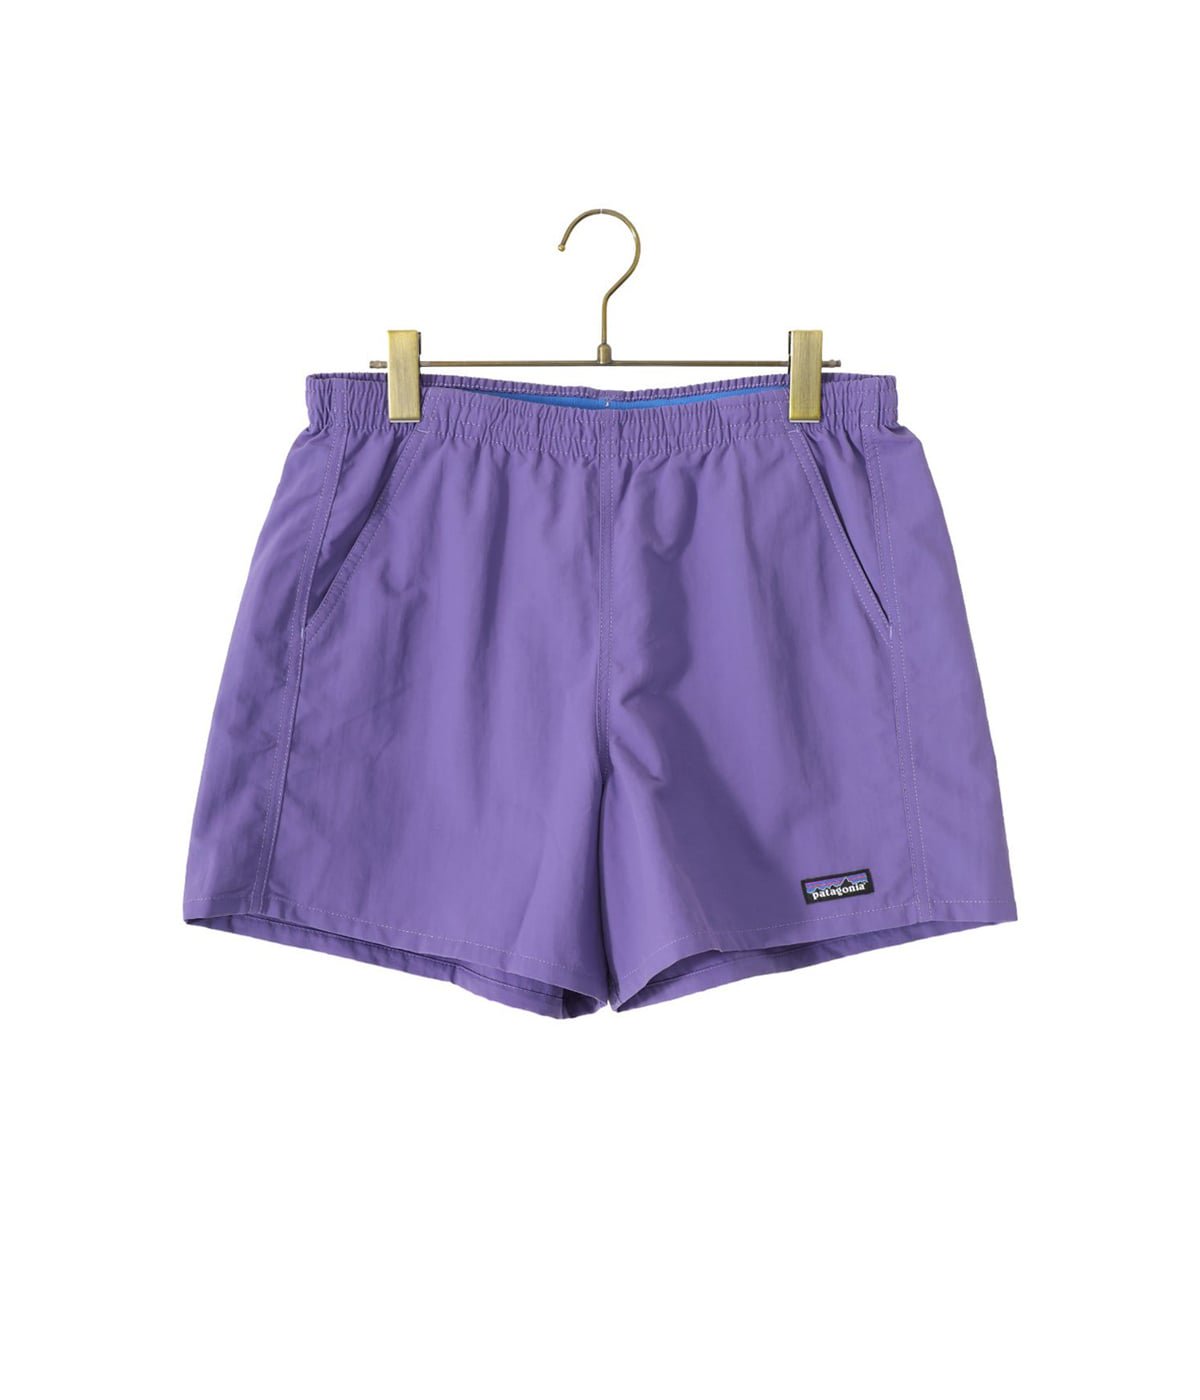 【レディース】W's Baggies Shorts - 5 in.